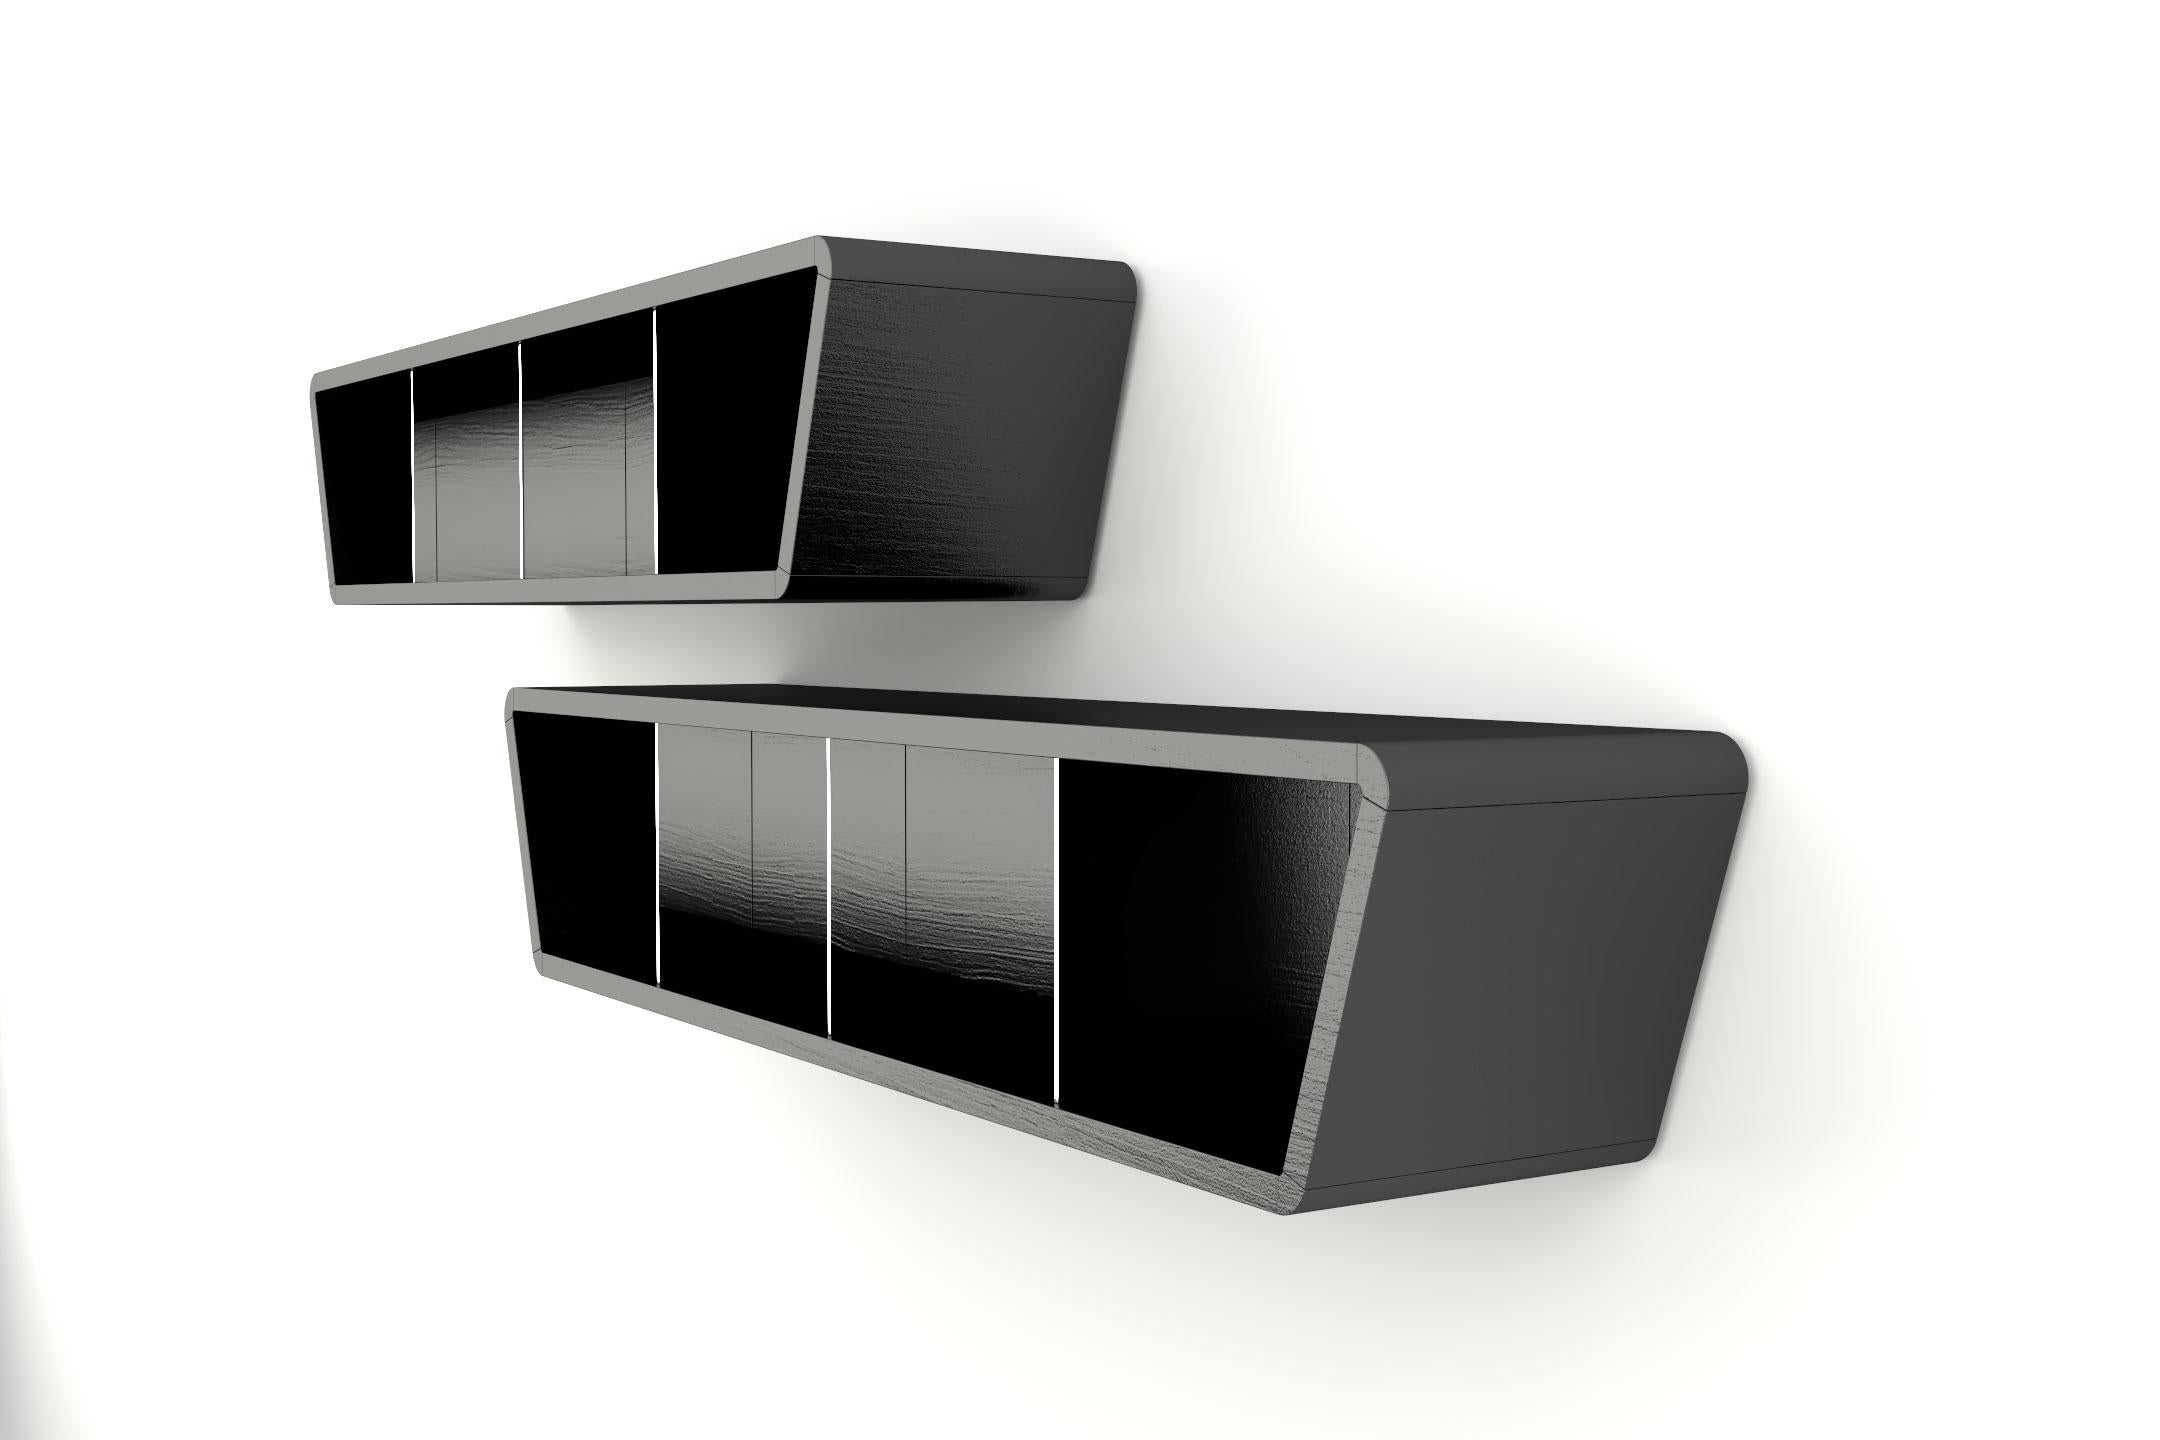 Die steilen Akzente der Obsidian-Kollektion verleihen dem einzigartigen Design eine erhabene und kraftvolle Präsenz und verleihen ihm einen aufsehenerregenden Look und eine eigene, starke Persönlichkeit. Dieses Stück ist aus lackiertem Holz mit